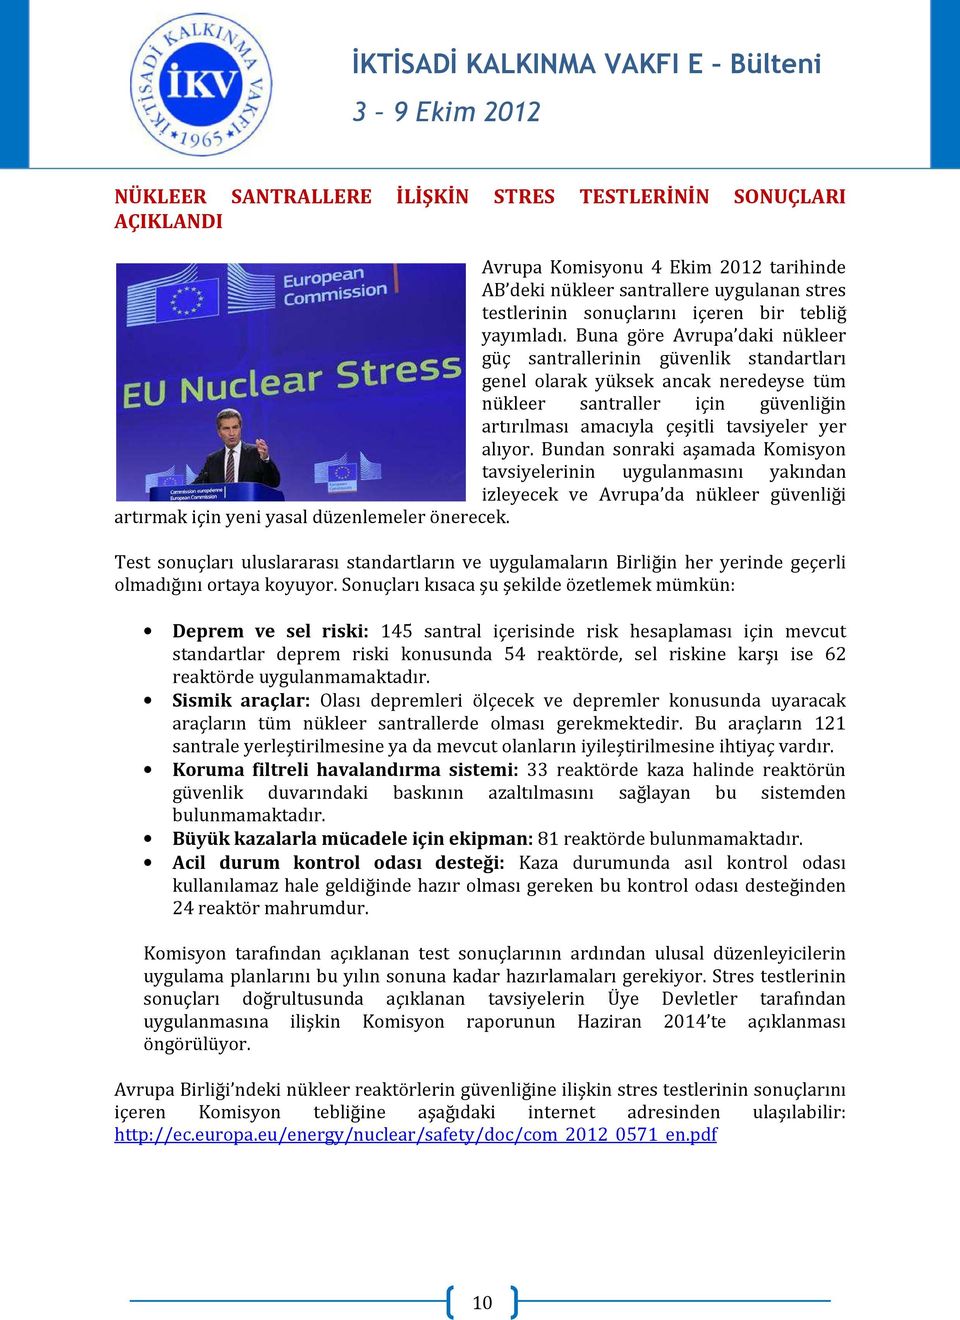 Buna göre Avrupa daki nükleer güç santrallerinin güvenlik standartları genel olarak yüksek ancak neredeyse tüm nükleer santraller için güvenliğin artırılması amacıyla çeşitli tavsiyeler yer alıyor.